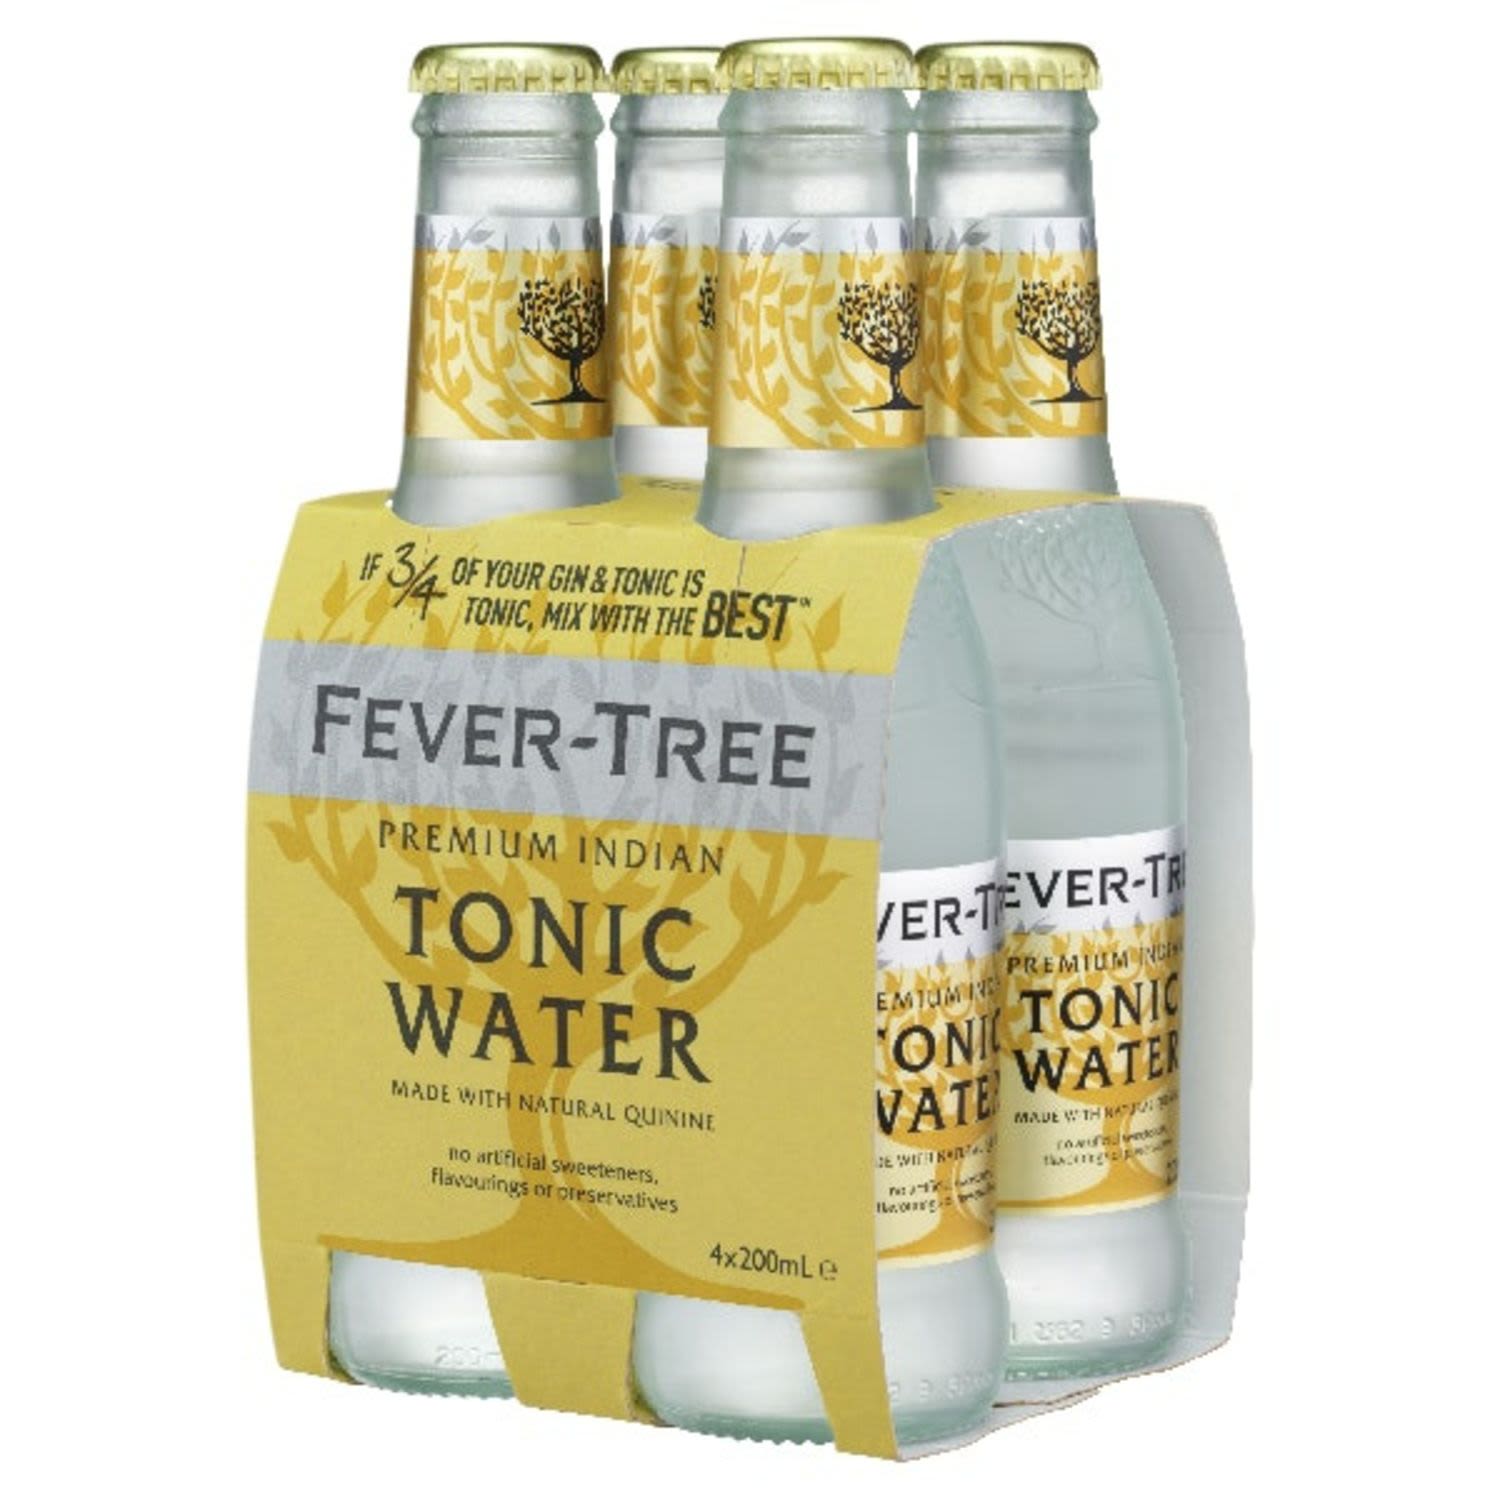 Fever-Tree Premium Indian Tonic Water Bottles 200mL<br /> <br />Alcohol Volume: 0%<br /><br />Pack Format: 4 Pack<br /><br />Standard Drinks: 0.0<br /><br />Pack Type: Bottle<br />